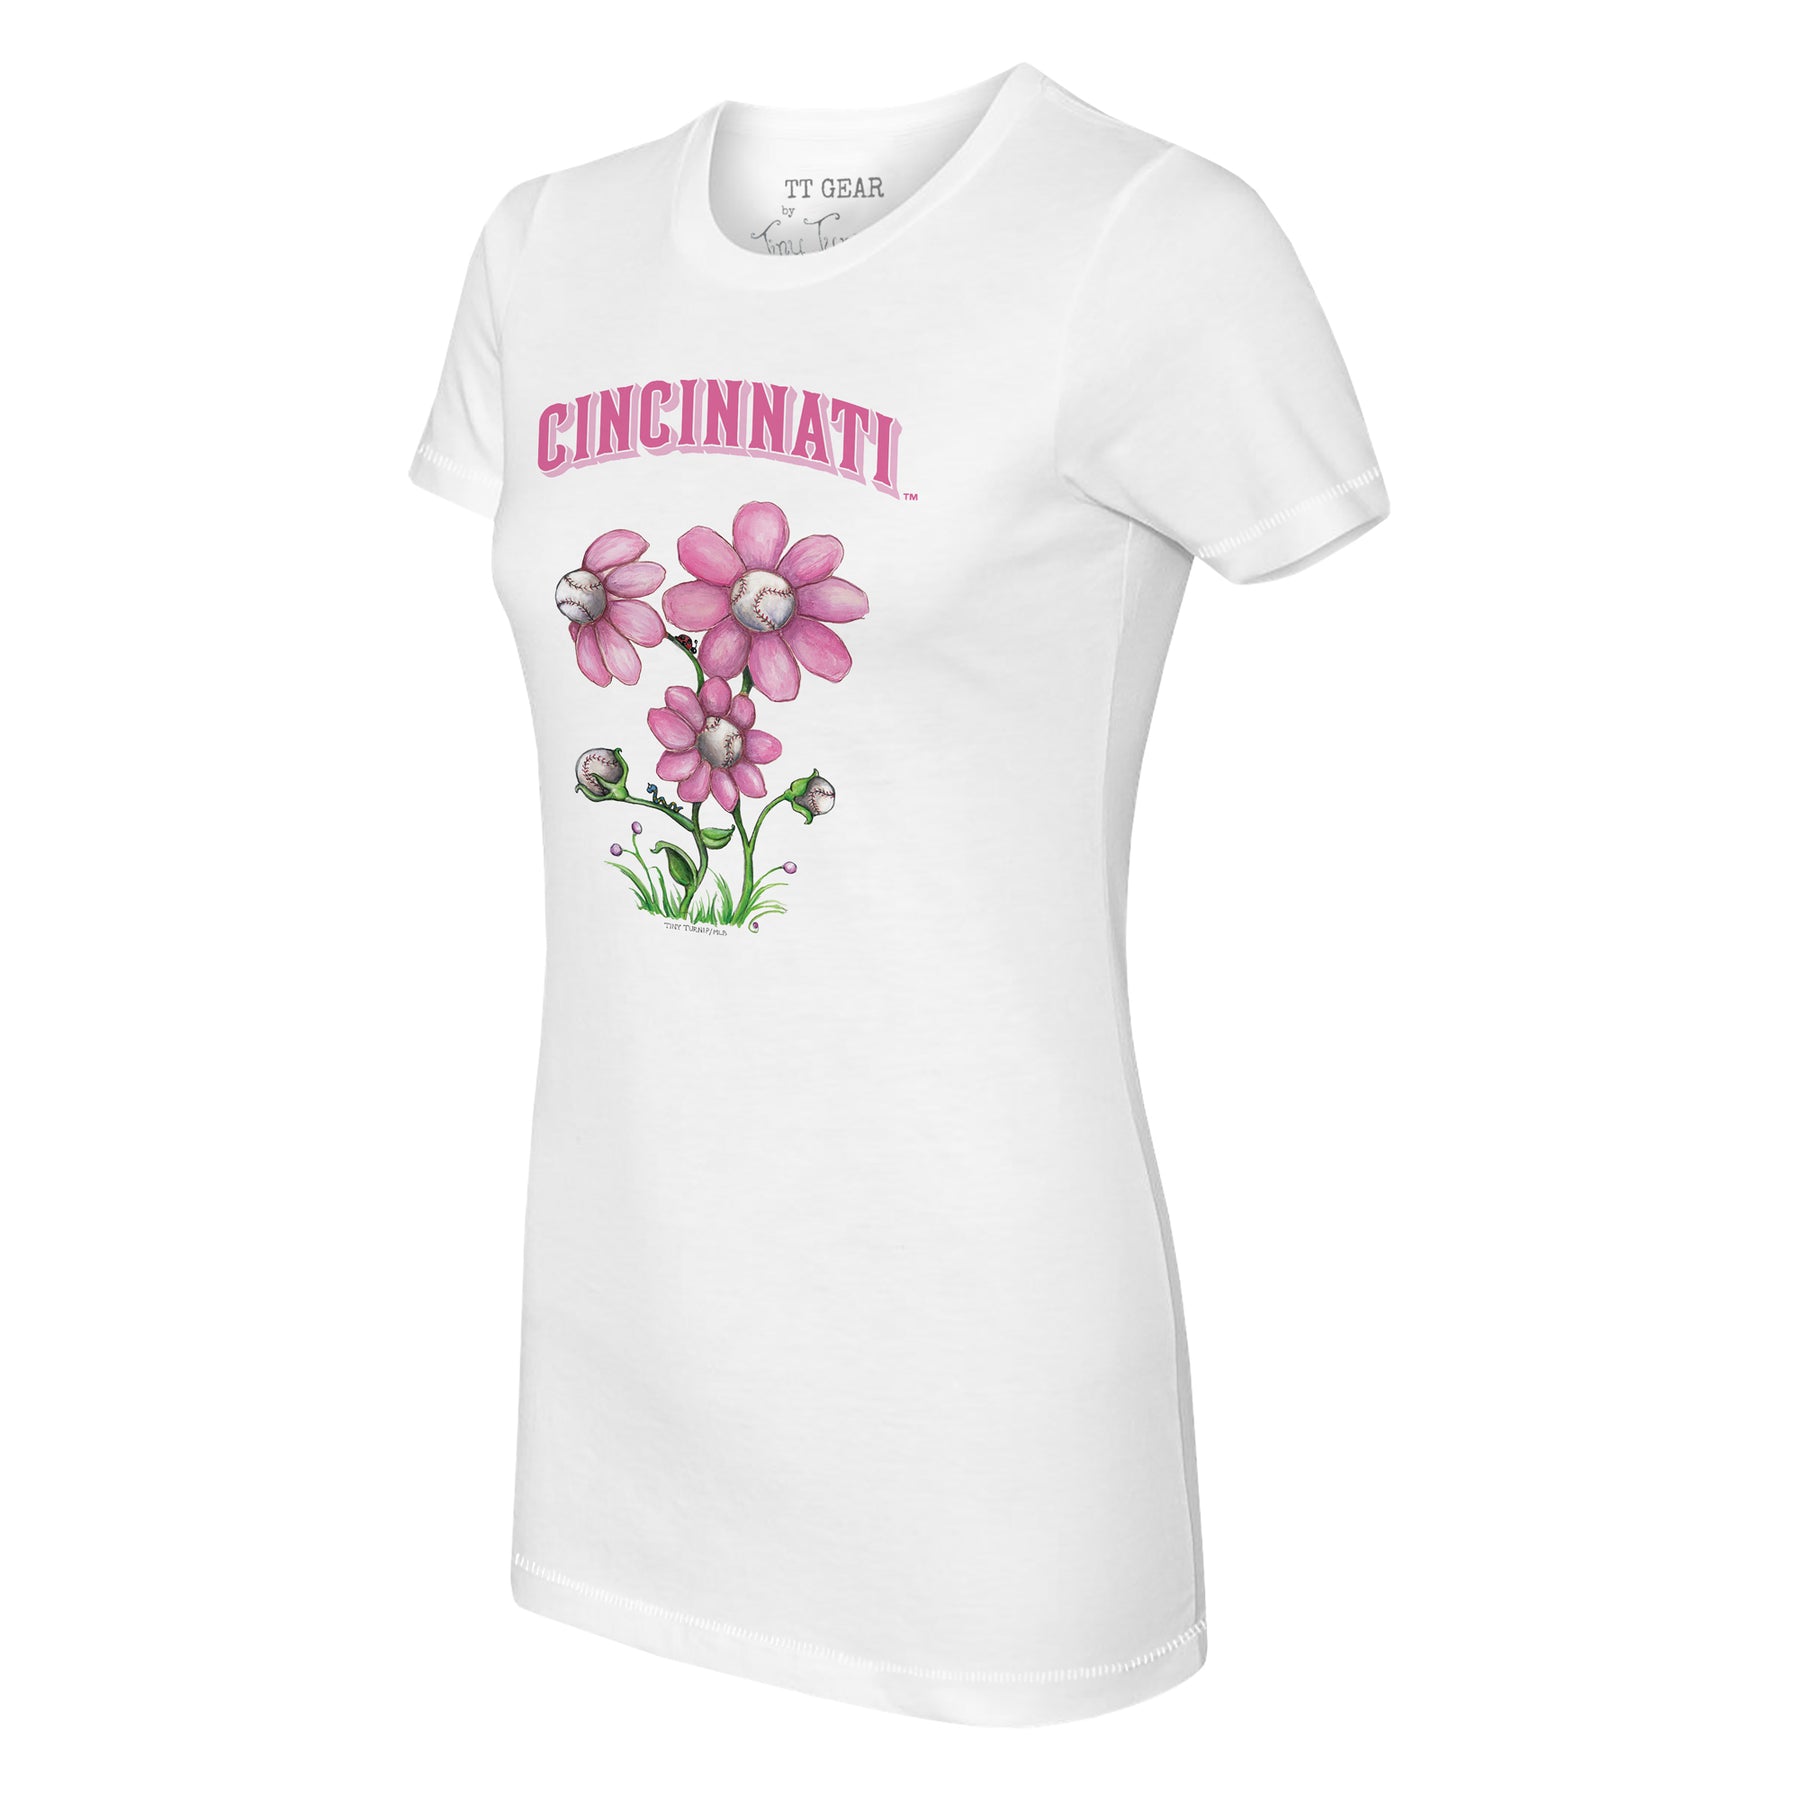 Cincinnati Reds Blooming Baseballs Tee Shirt